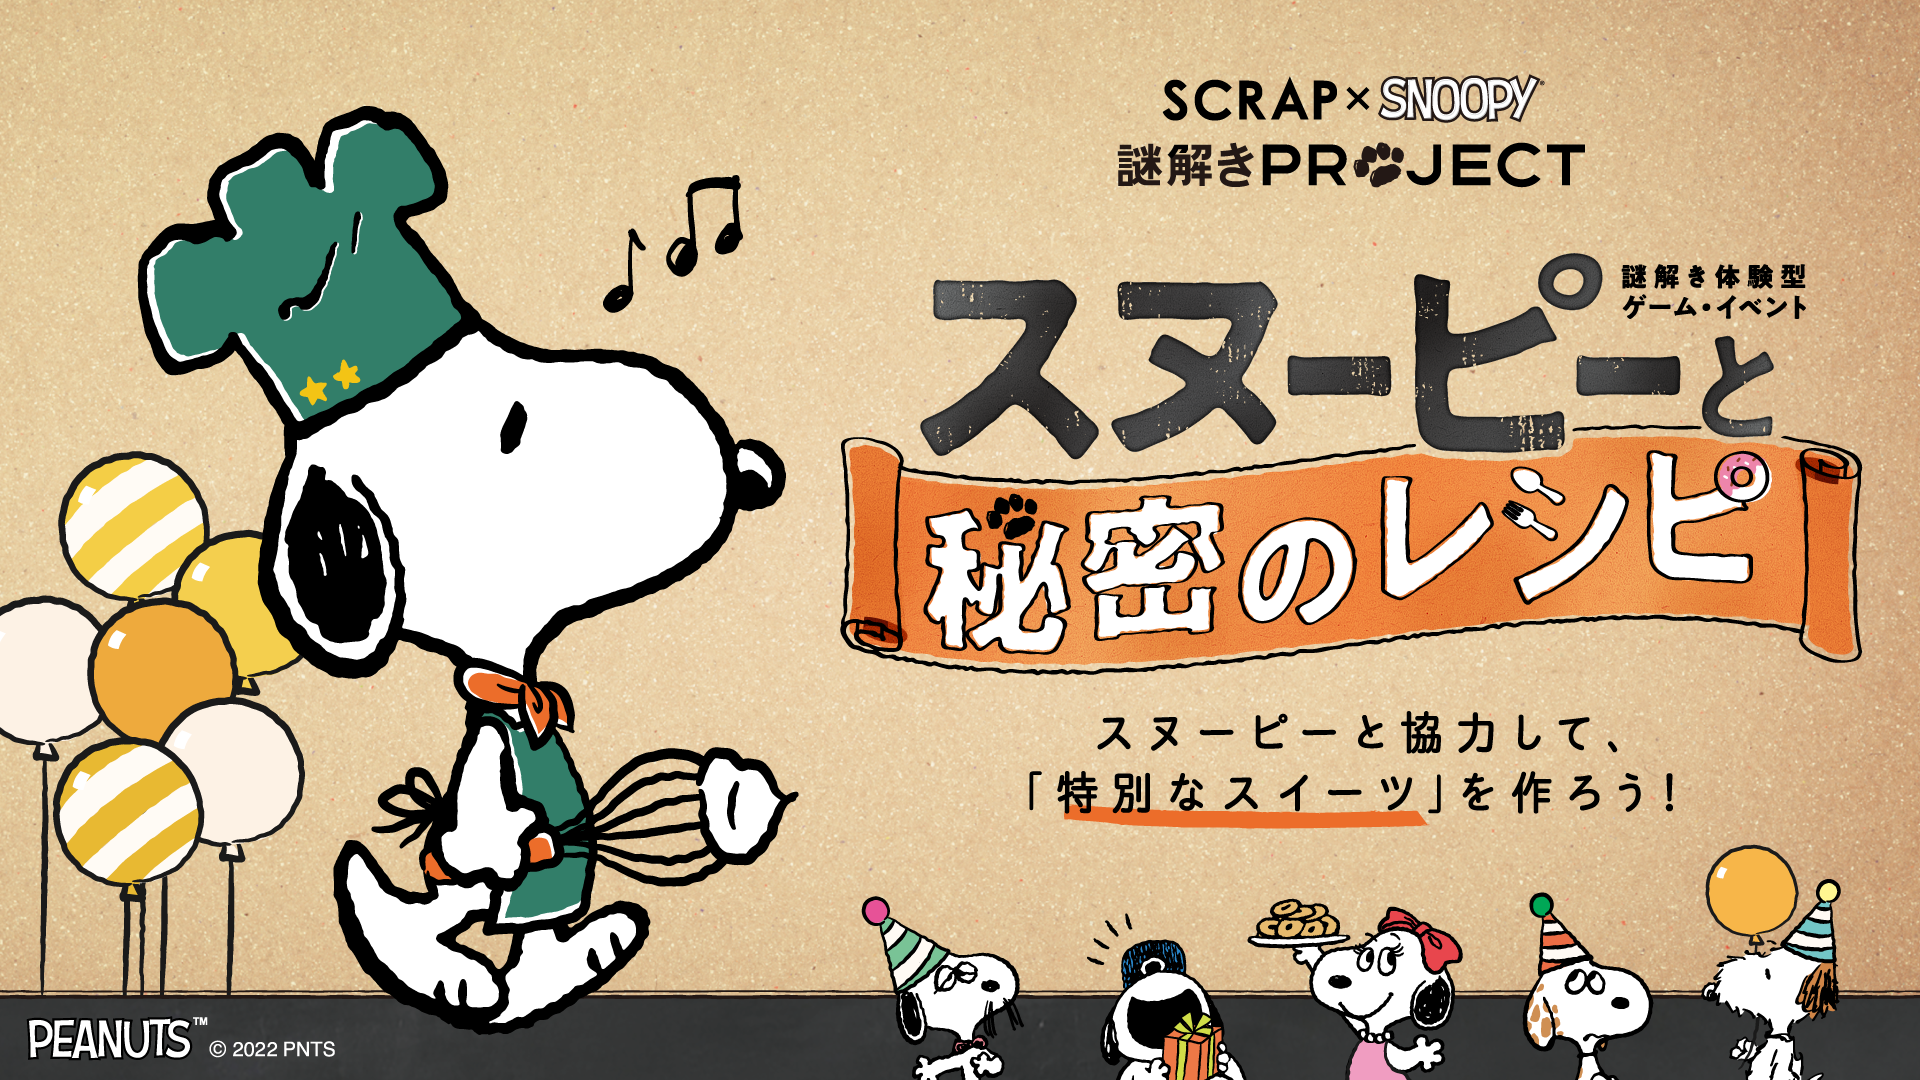 【名古屋】SCRAP×SNOOPY 謎解きPROJECT「スヌーピーと秘密のレシピ」